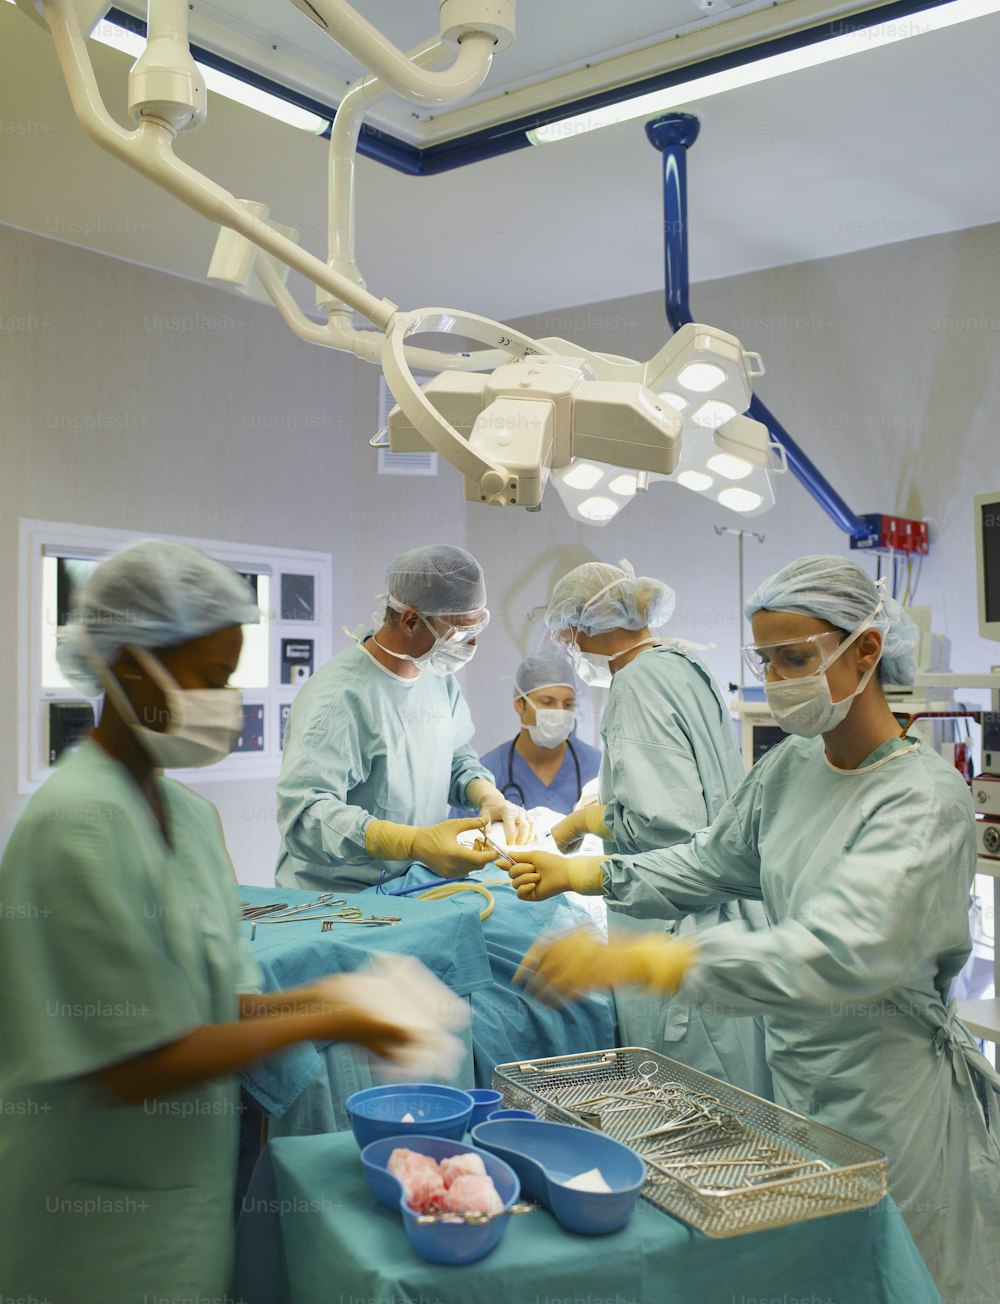 a group of doctors in scrubs preparing food